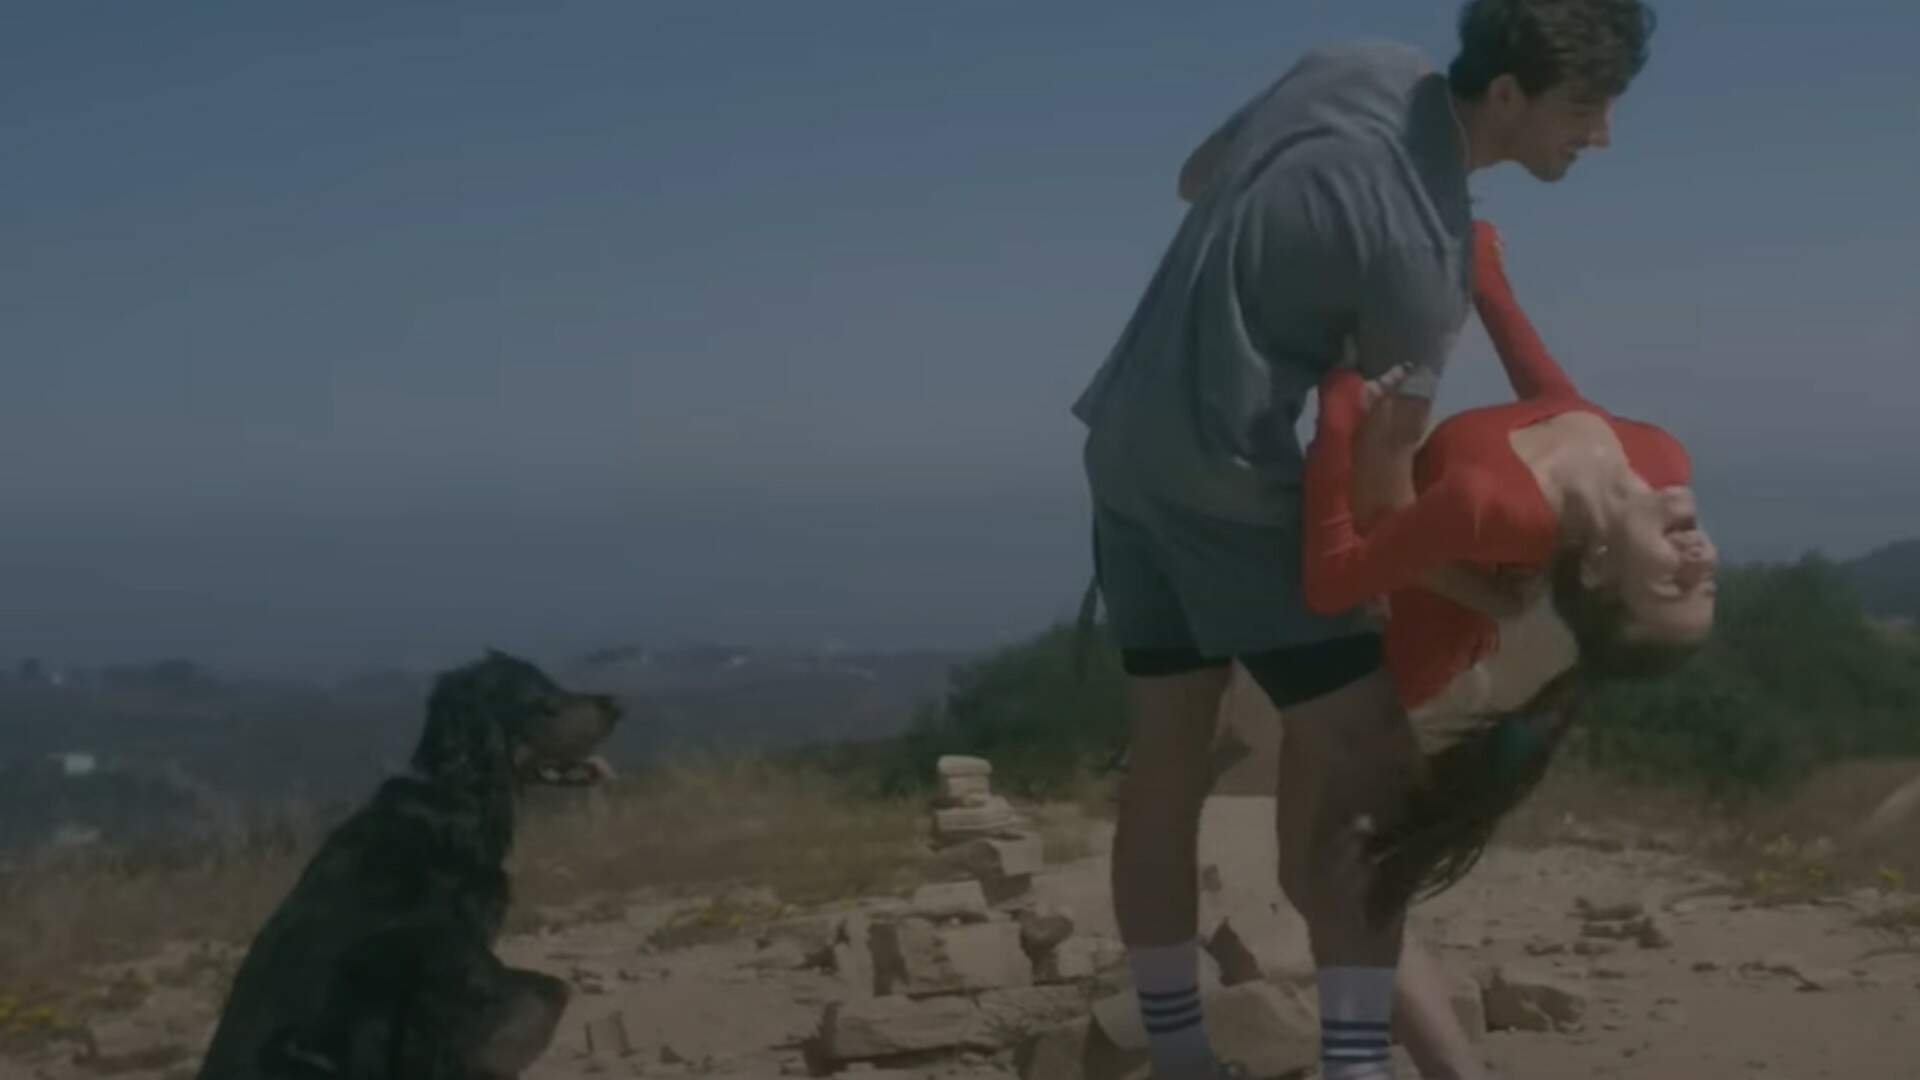 Giulia Be mostra cenas de intimidade com o namorado em clipe romântico do hit  “matching tattoo”